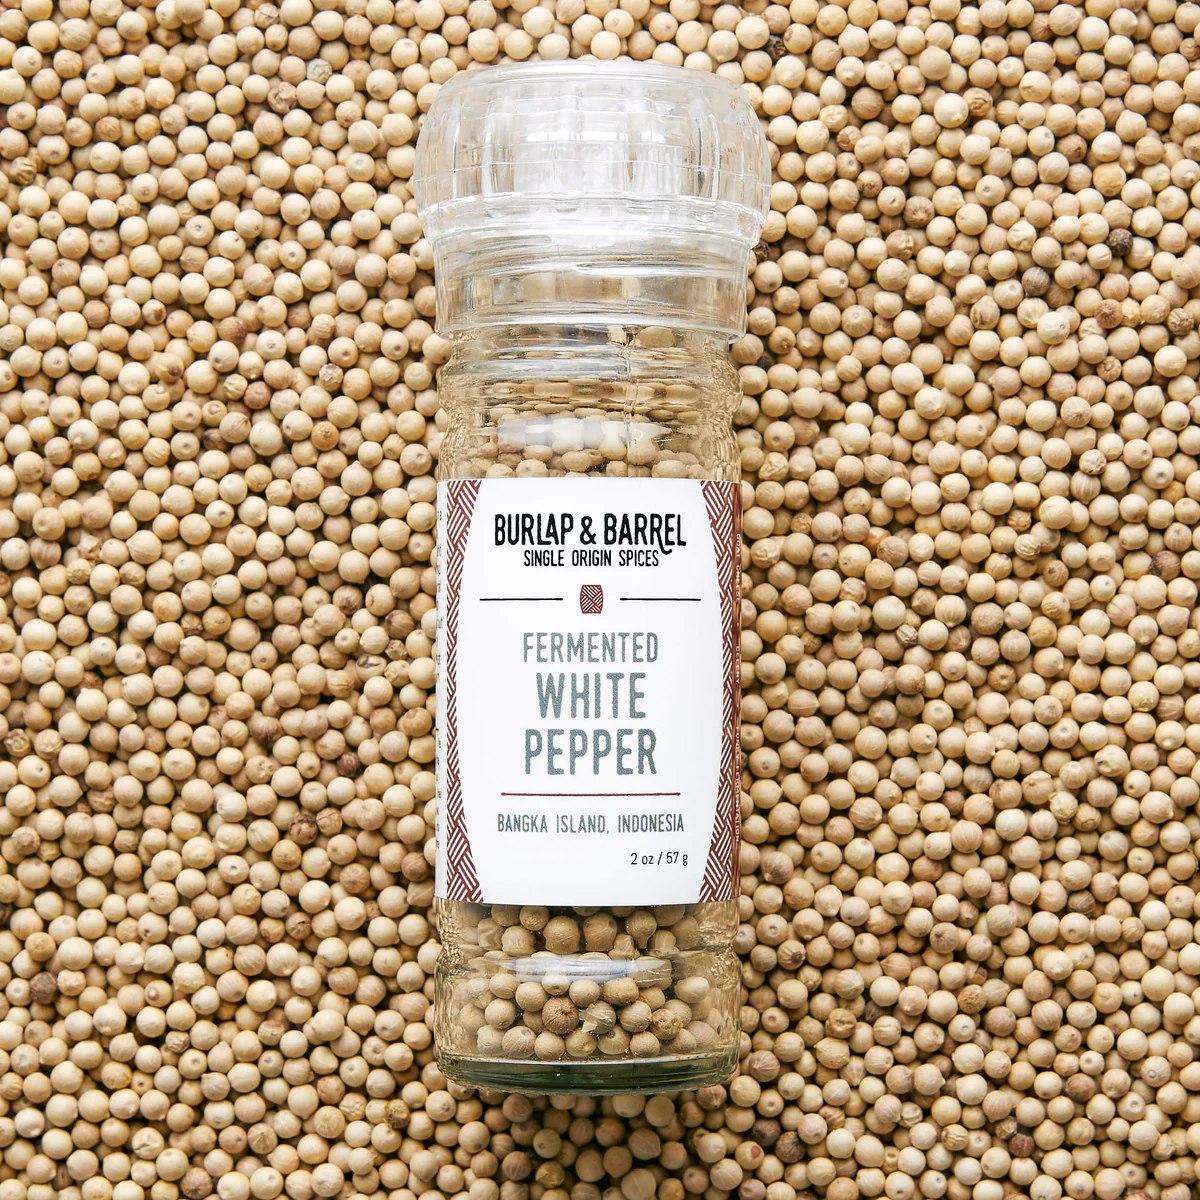 Fermented White Pepper From Burlap & Barrel